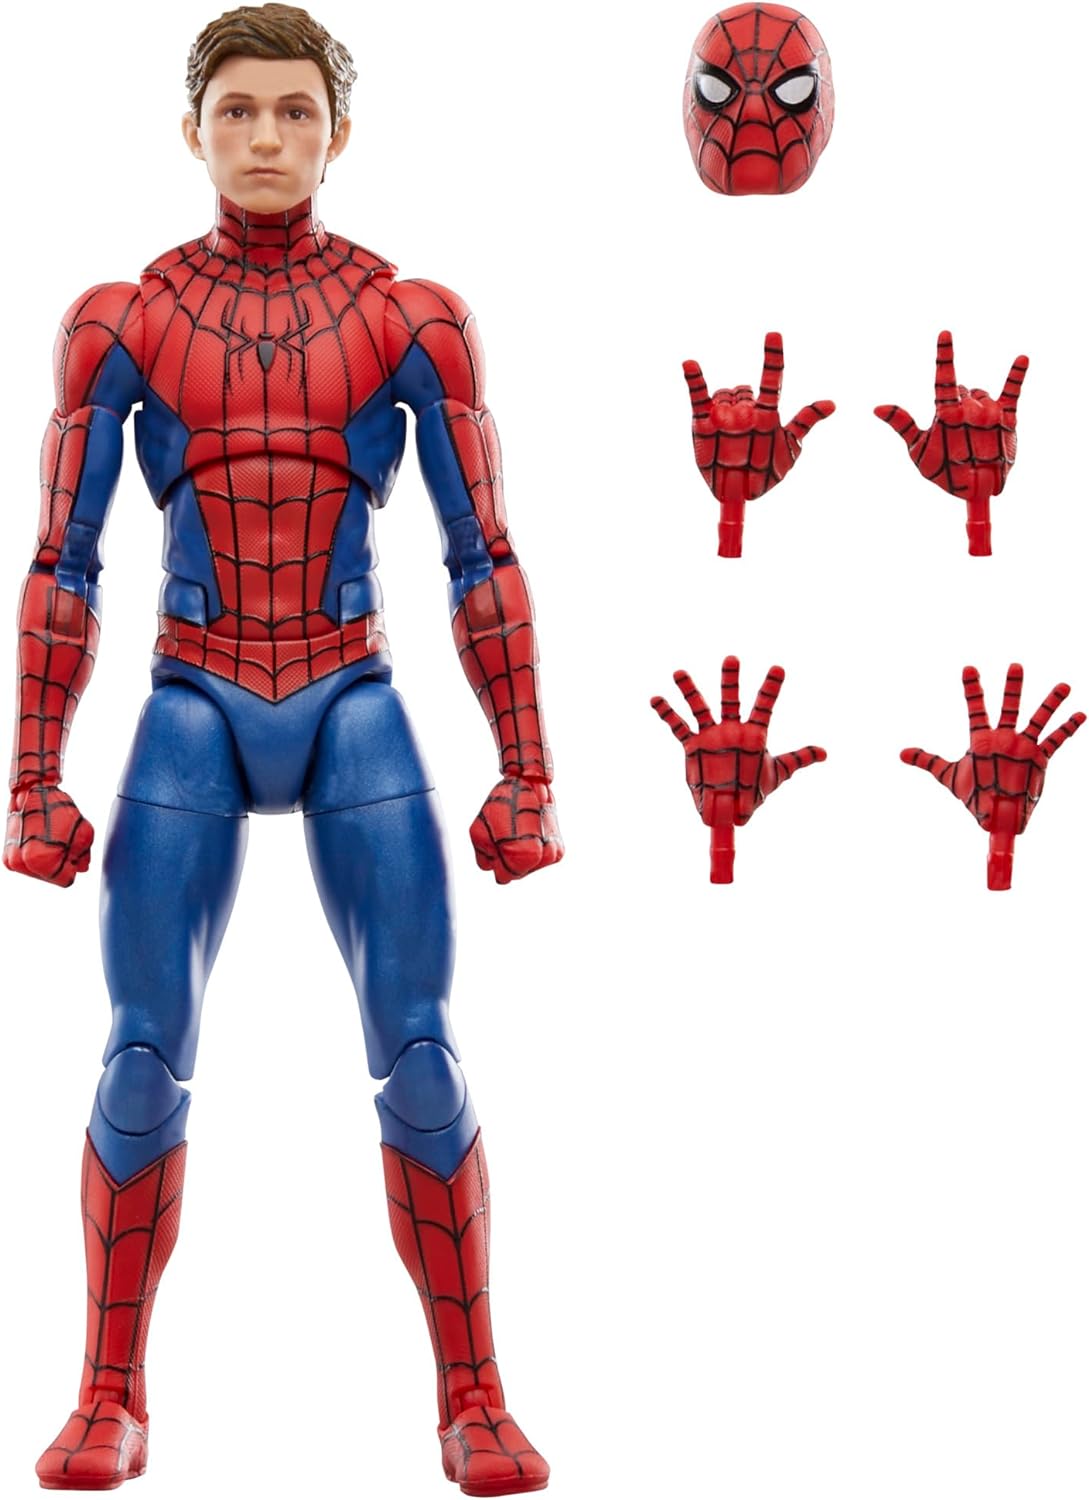 Marvel Legends Spider-Man NWH Spider-Man 6-Inch Action Figure画像